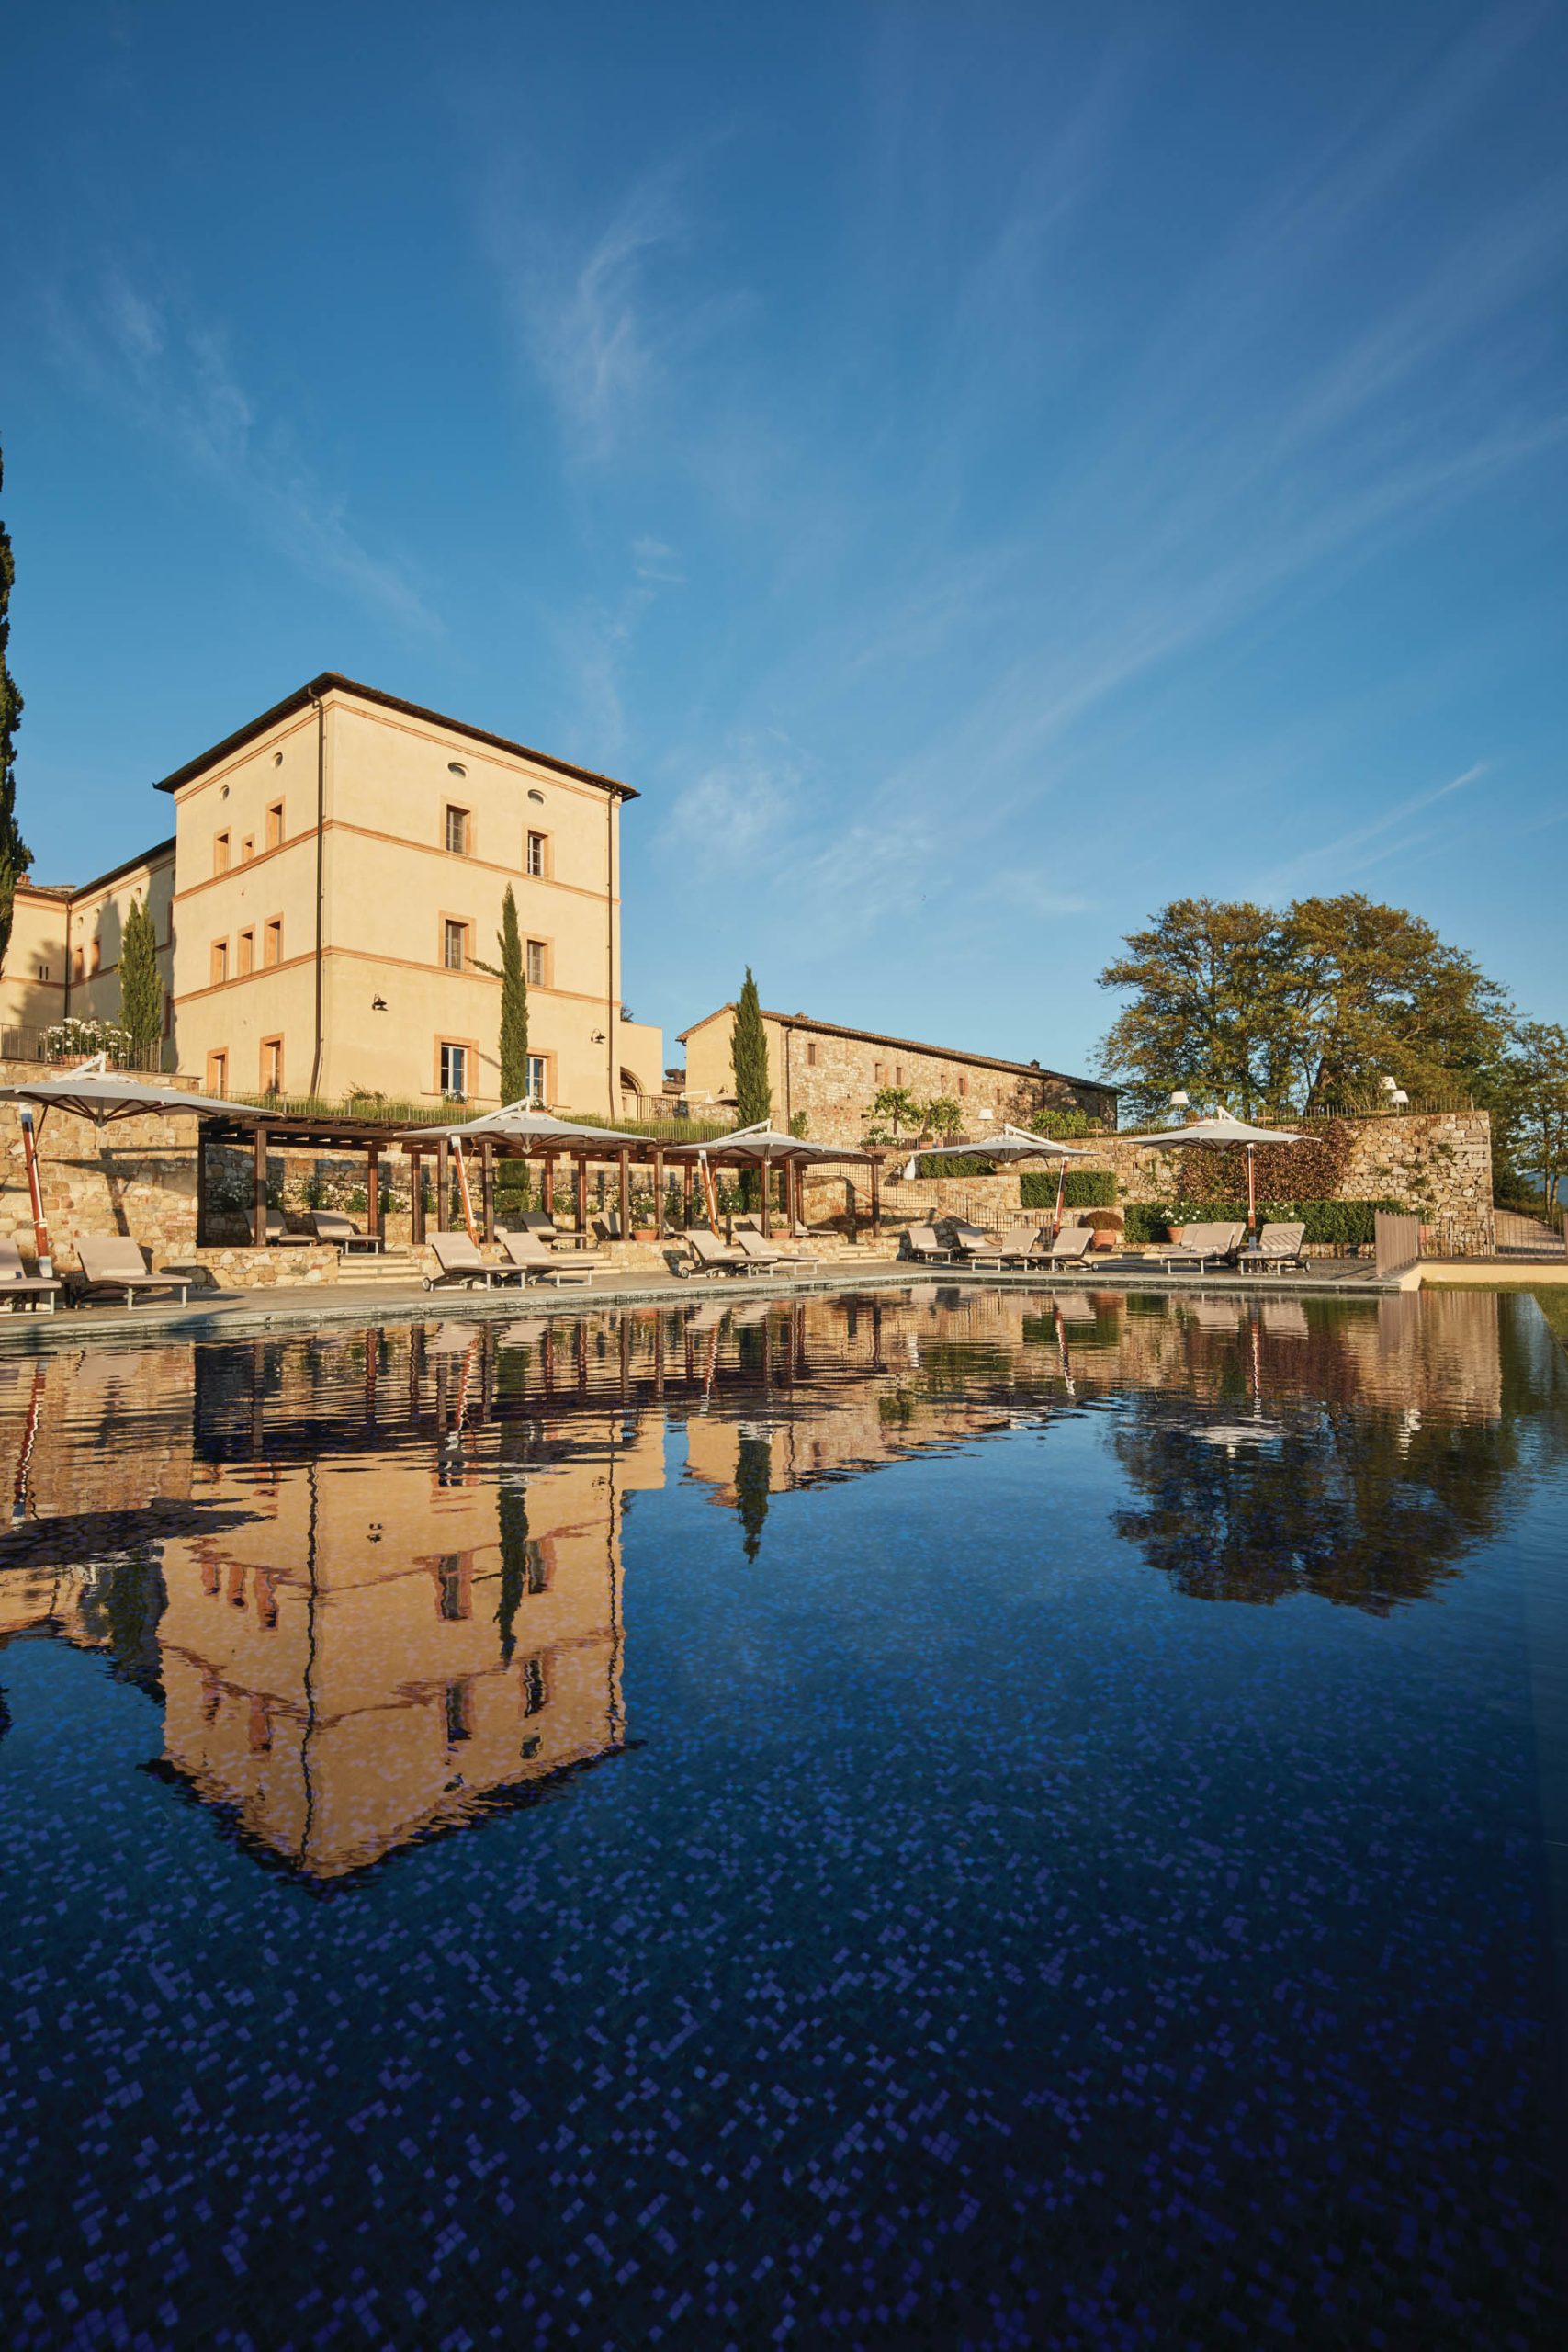 Castello di Casole, A Belmond Hotel, Tuscany – Casole d’Elsa, Italy – Pool